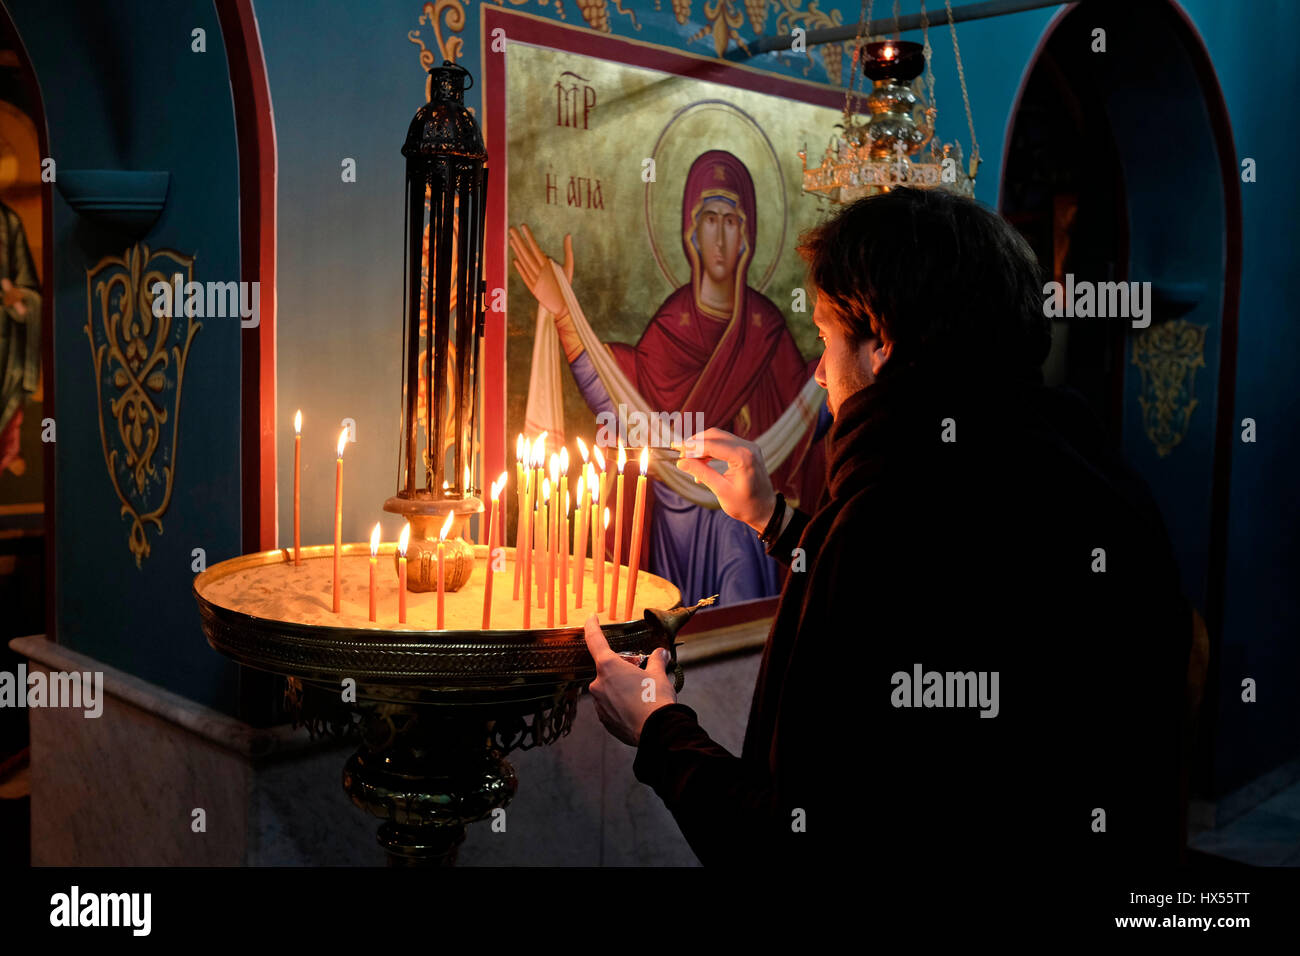 Un adorateur chrétien orthodoxe allume des bougies à l'intérieur de  l'église du monastère grec orthodoxe, connu sous le nom de Gethsemane  Metoxion où une célèbre icône de Sainte Marie se tient toute